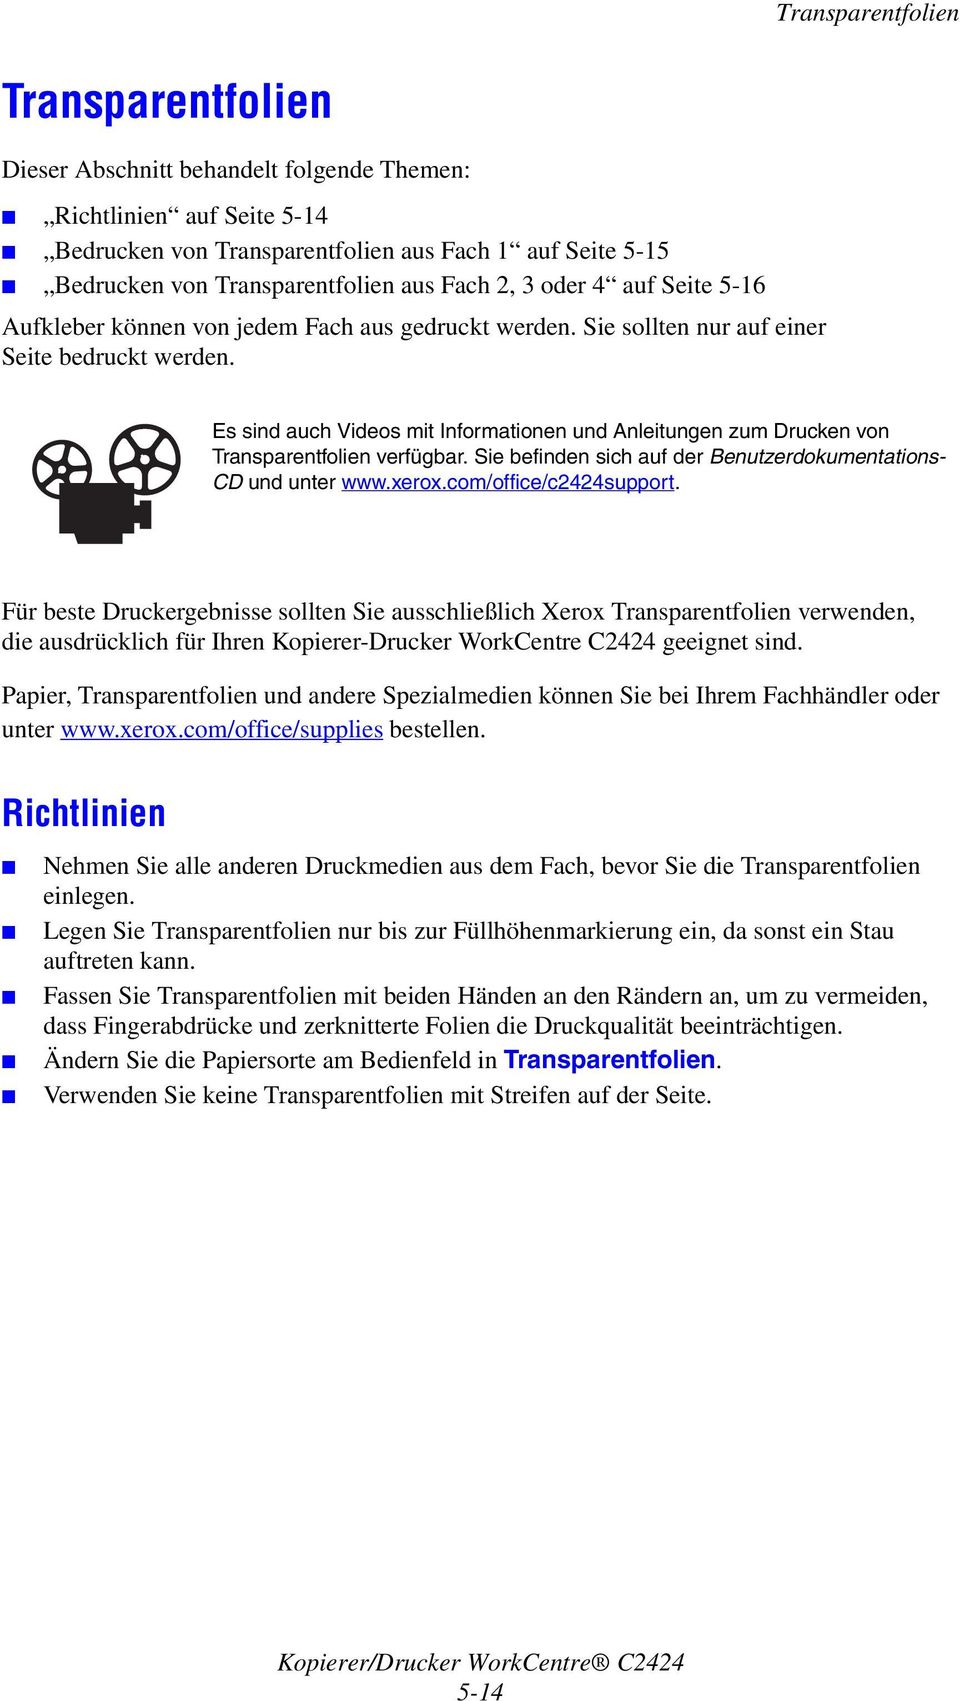 Es sind auch Videos mit Informationen und Anleitungen zum Drucken von Transparentfolien verfügbar. Sie befinden sich auf der Benutzerdokumentations- CD und unter www.xerox.com/office/c2424support.